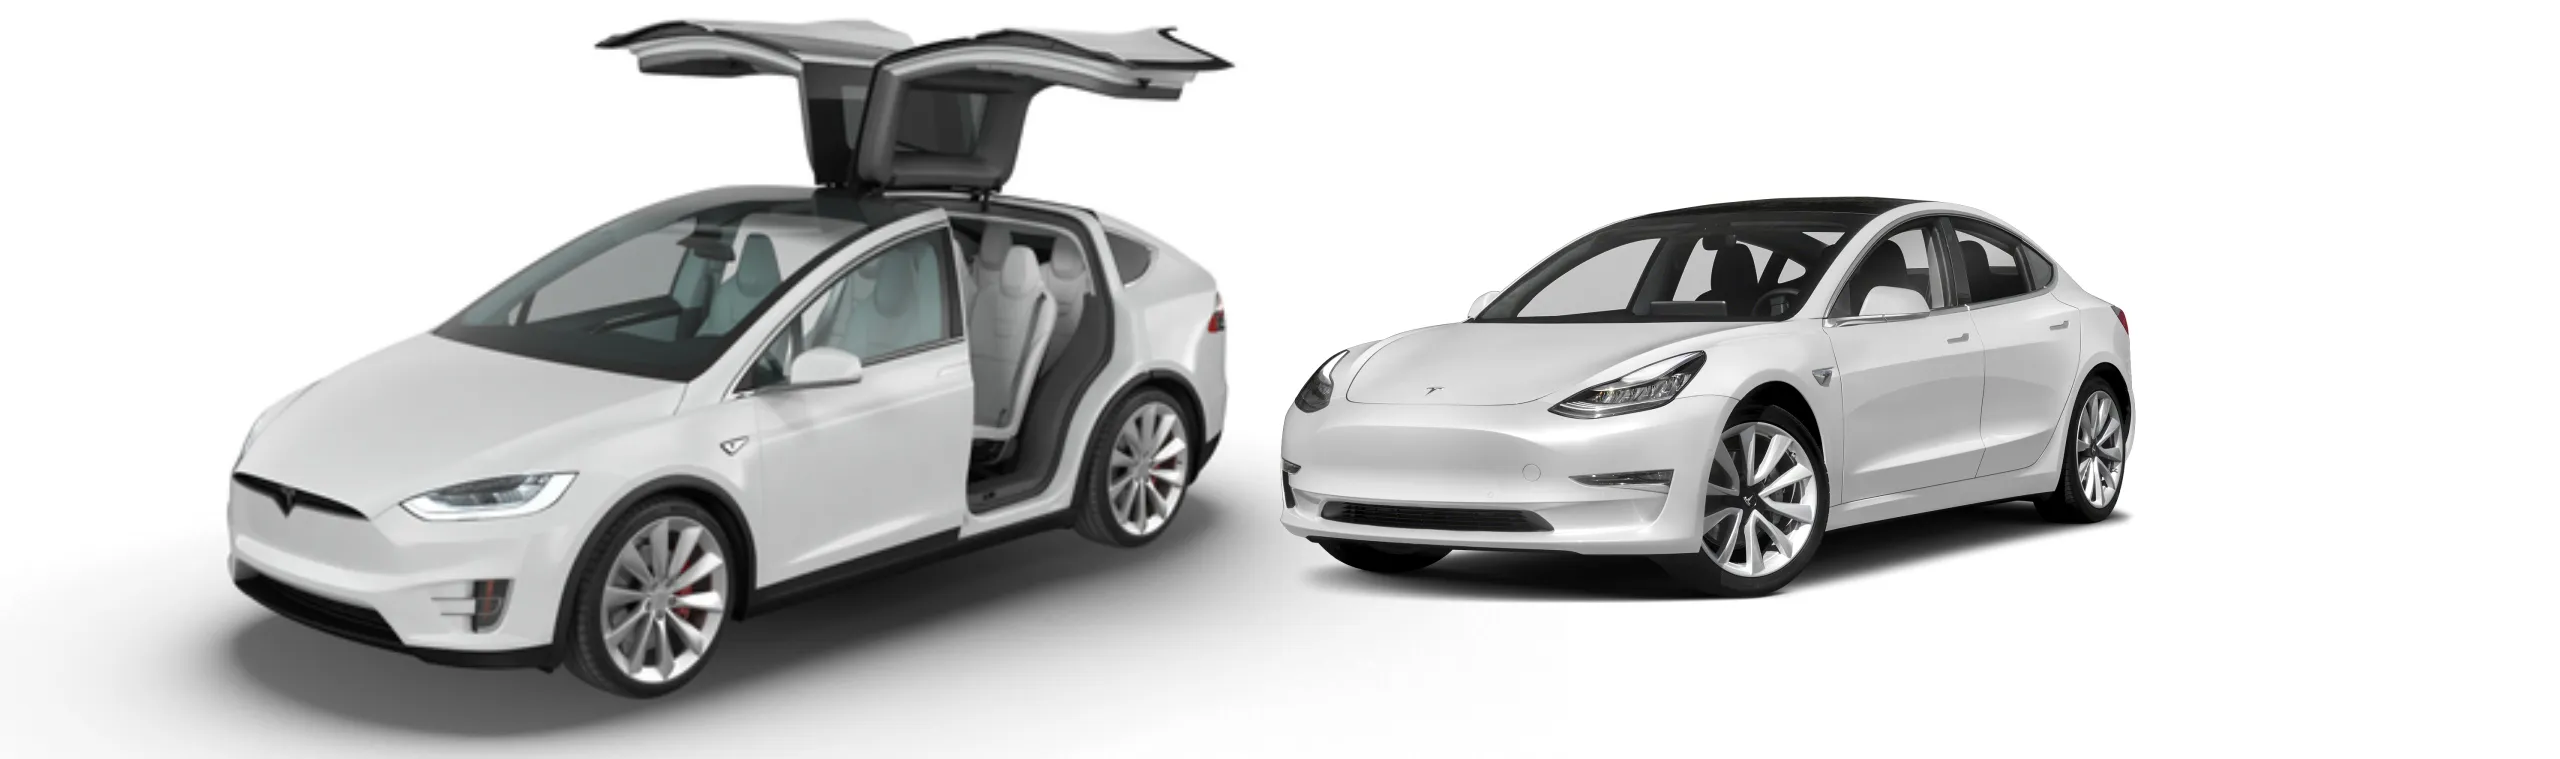 Mẫu xe Tesla Model X và Tesla Model 3